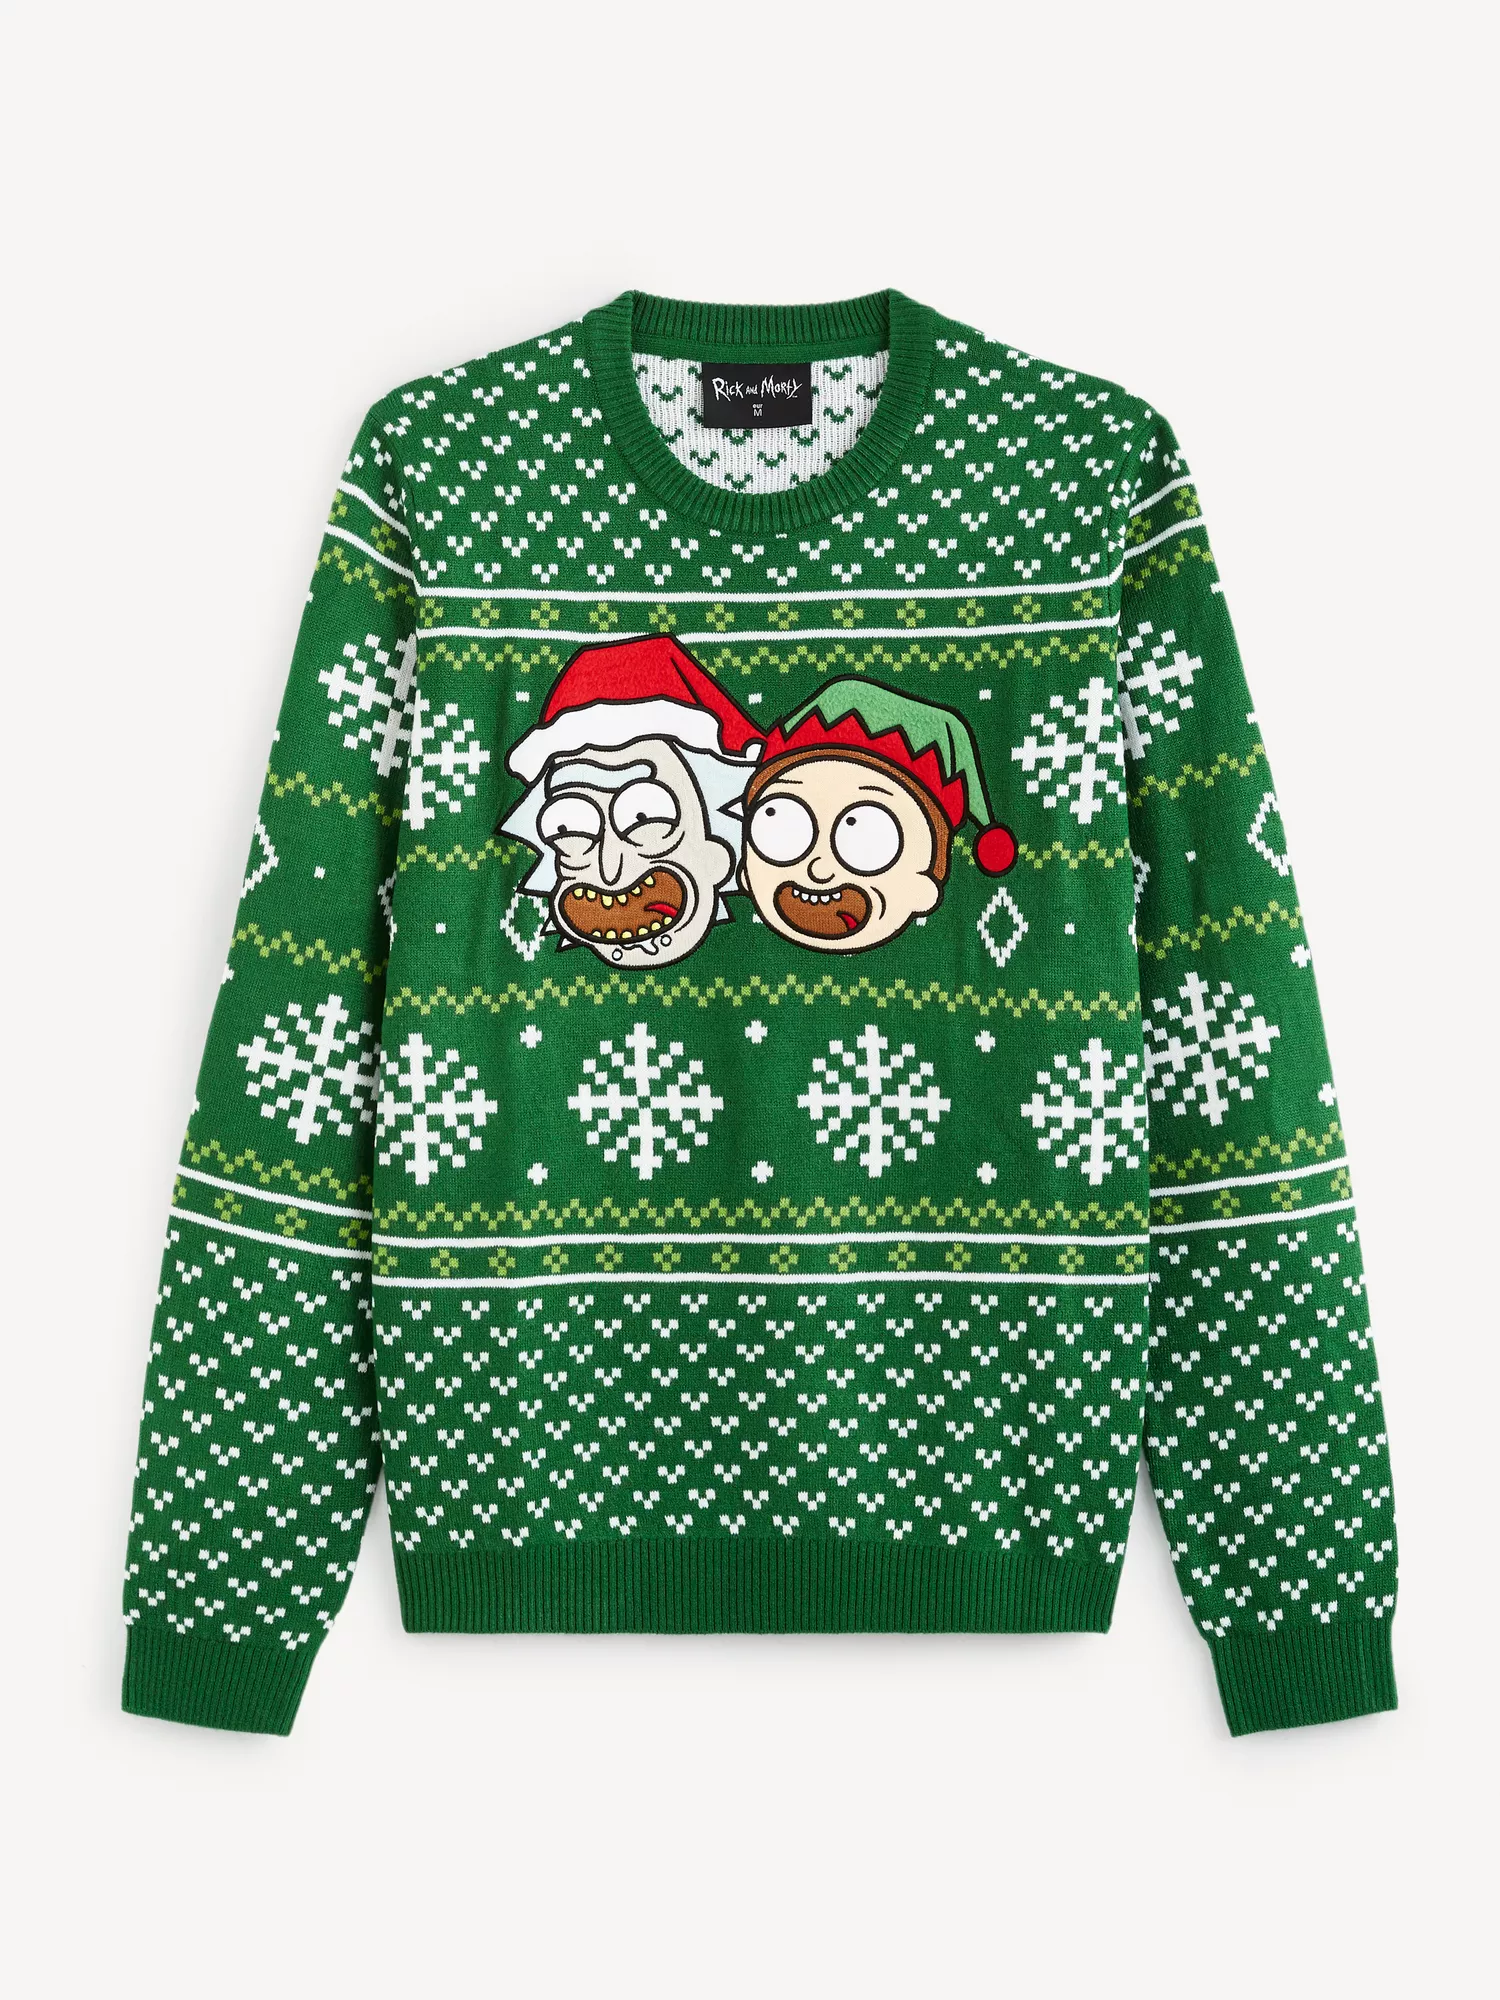 Vánoční svetr Rick and Morty (4)